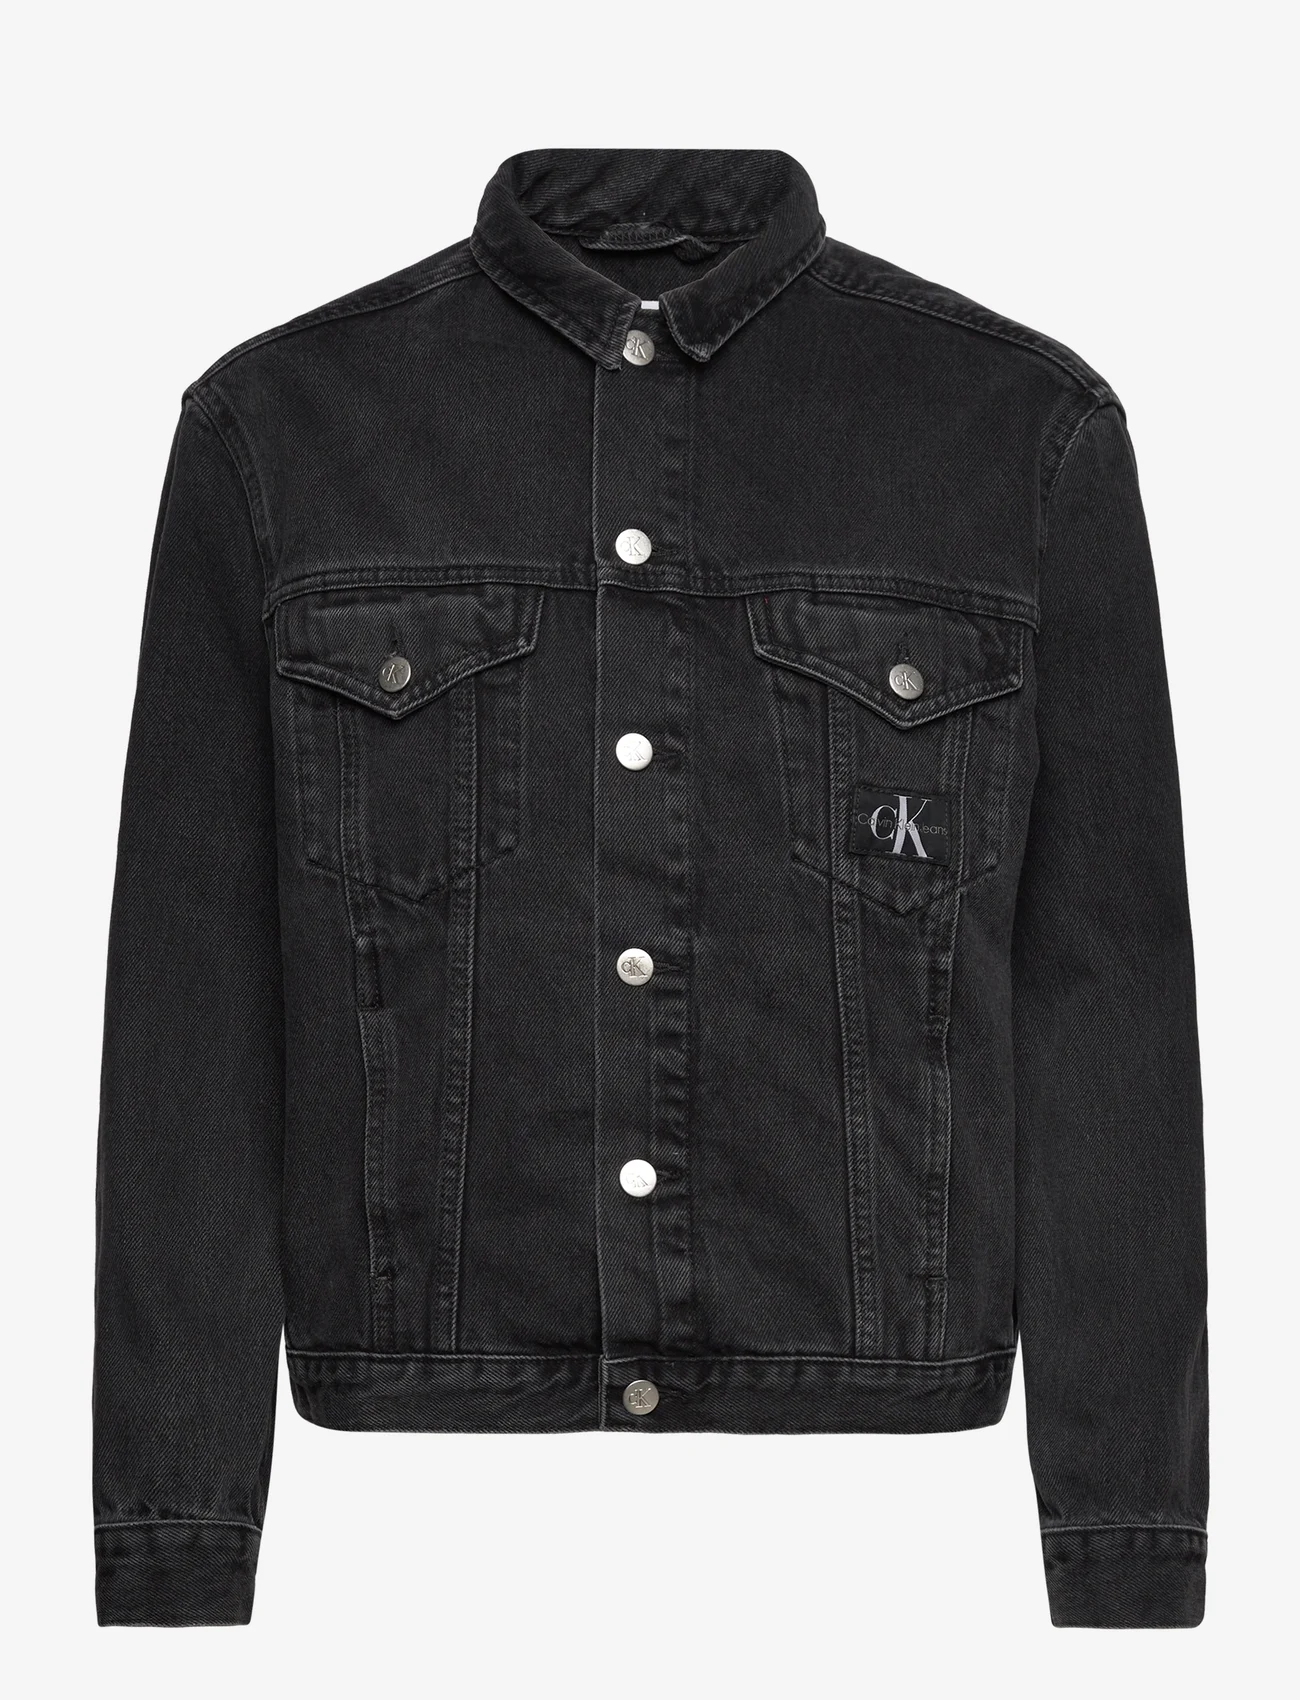 Calvin Klein Jeans - ARCHIVAL DENIM JACKET - spring jackets - denim black - 0